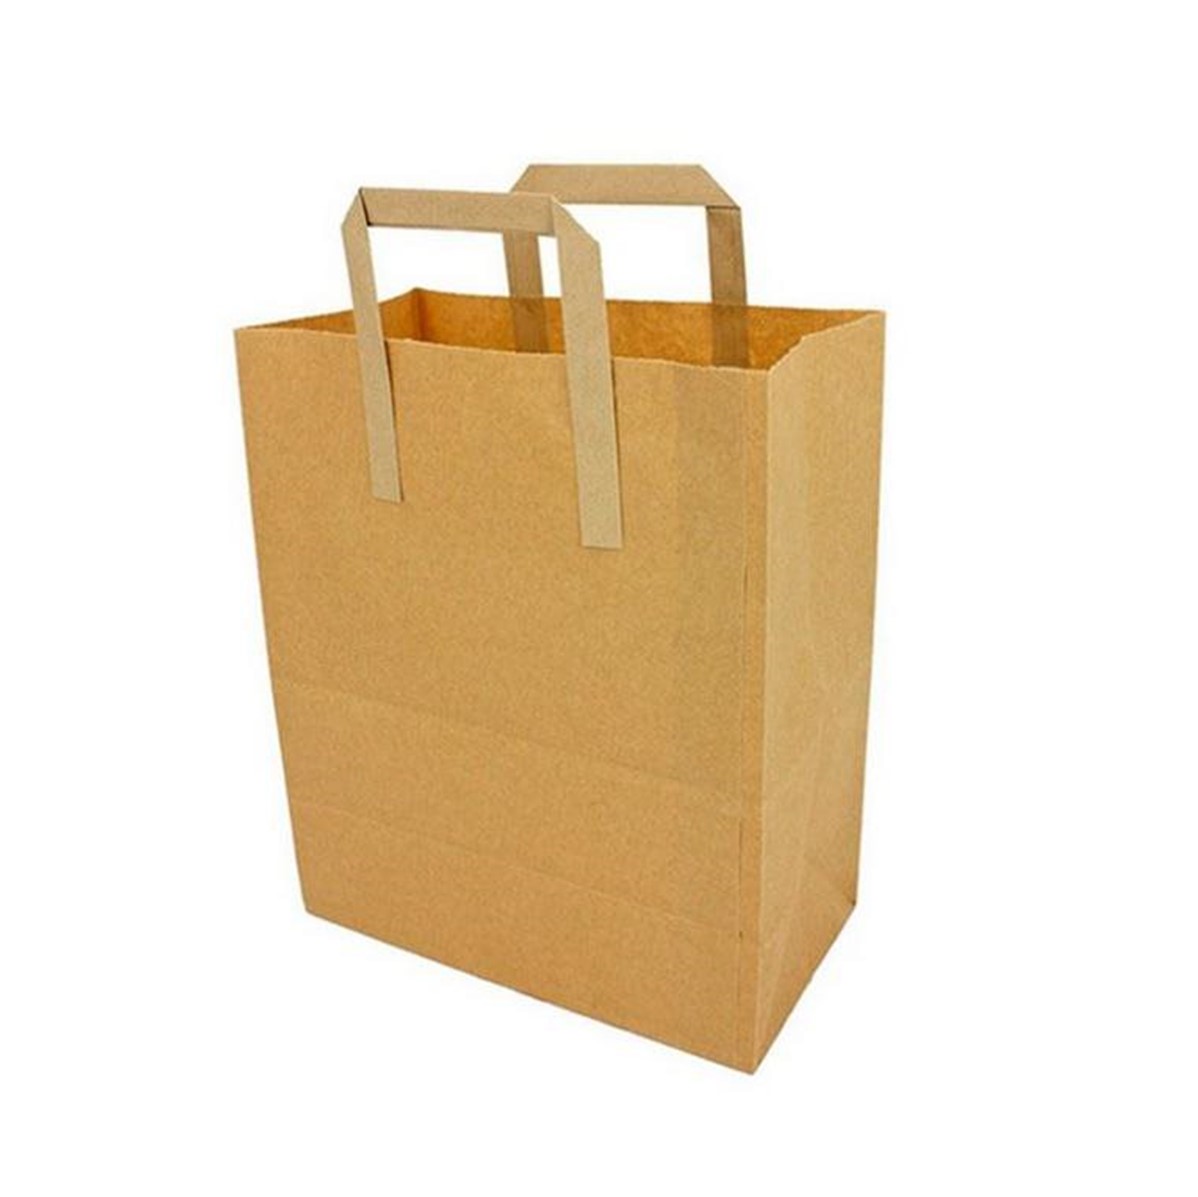 Take-Away Carrier Bag Brown MEDIUM - 125 bags [9x10x4'']